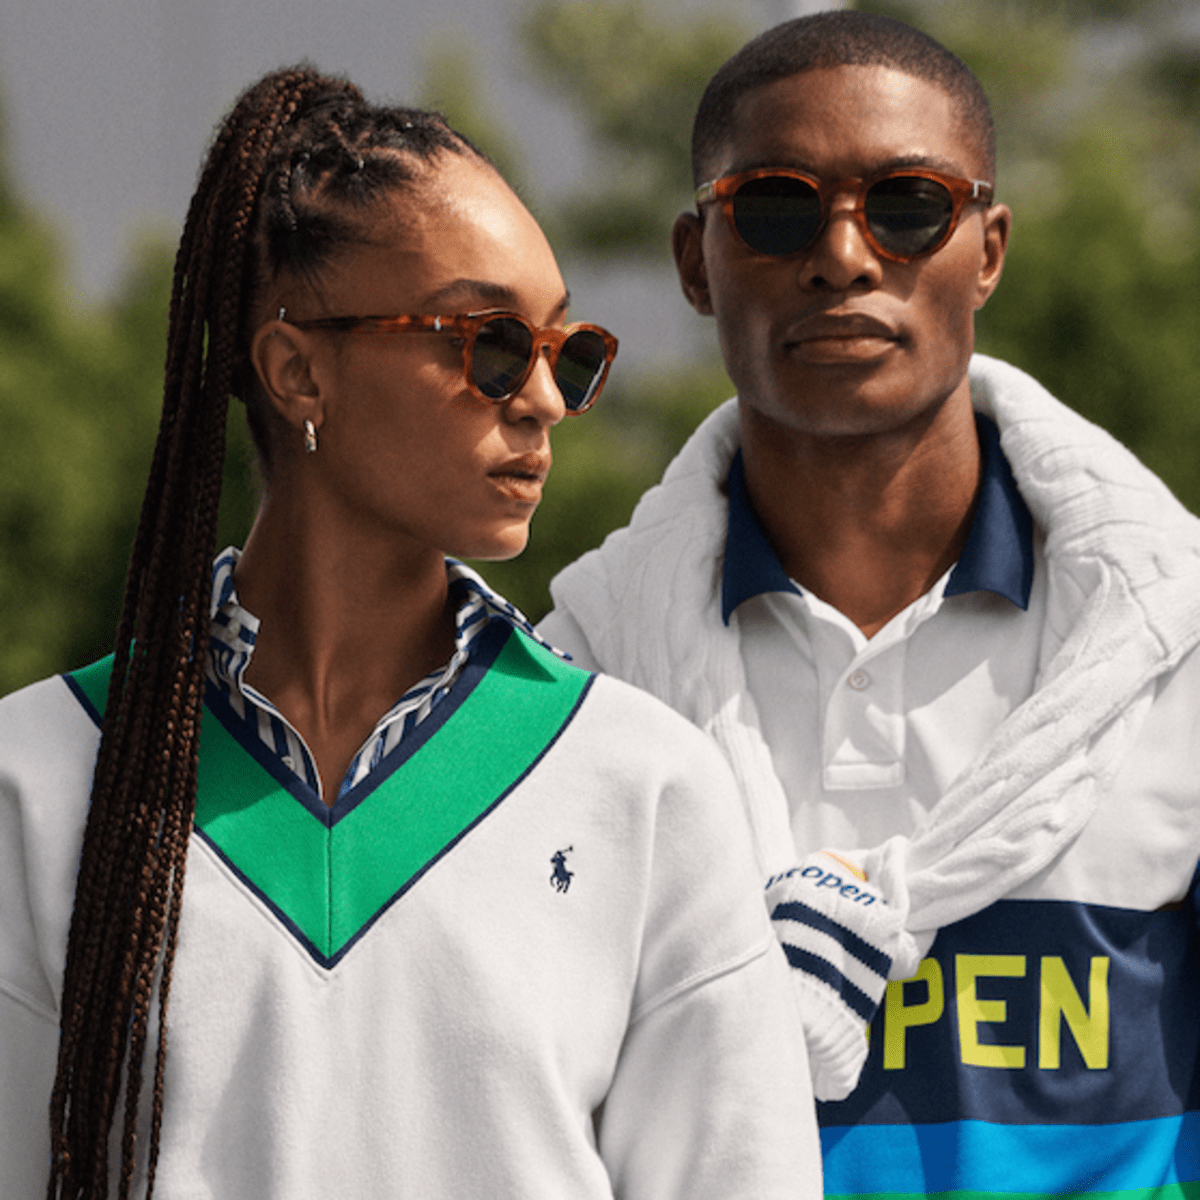 Ralph Lauren Reveals 2022 U.S. Open Tennis Collection & Ballperson Uniform